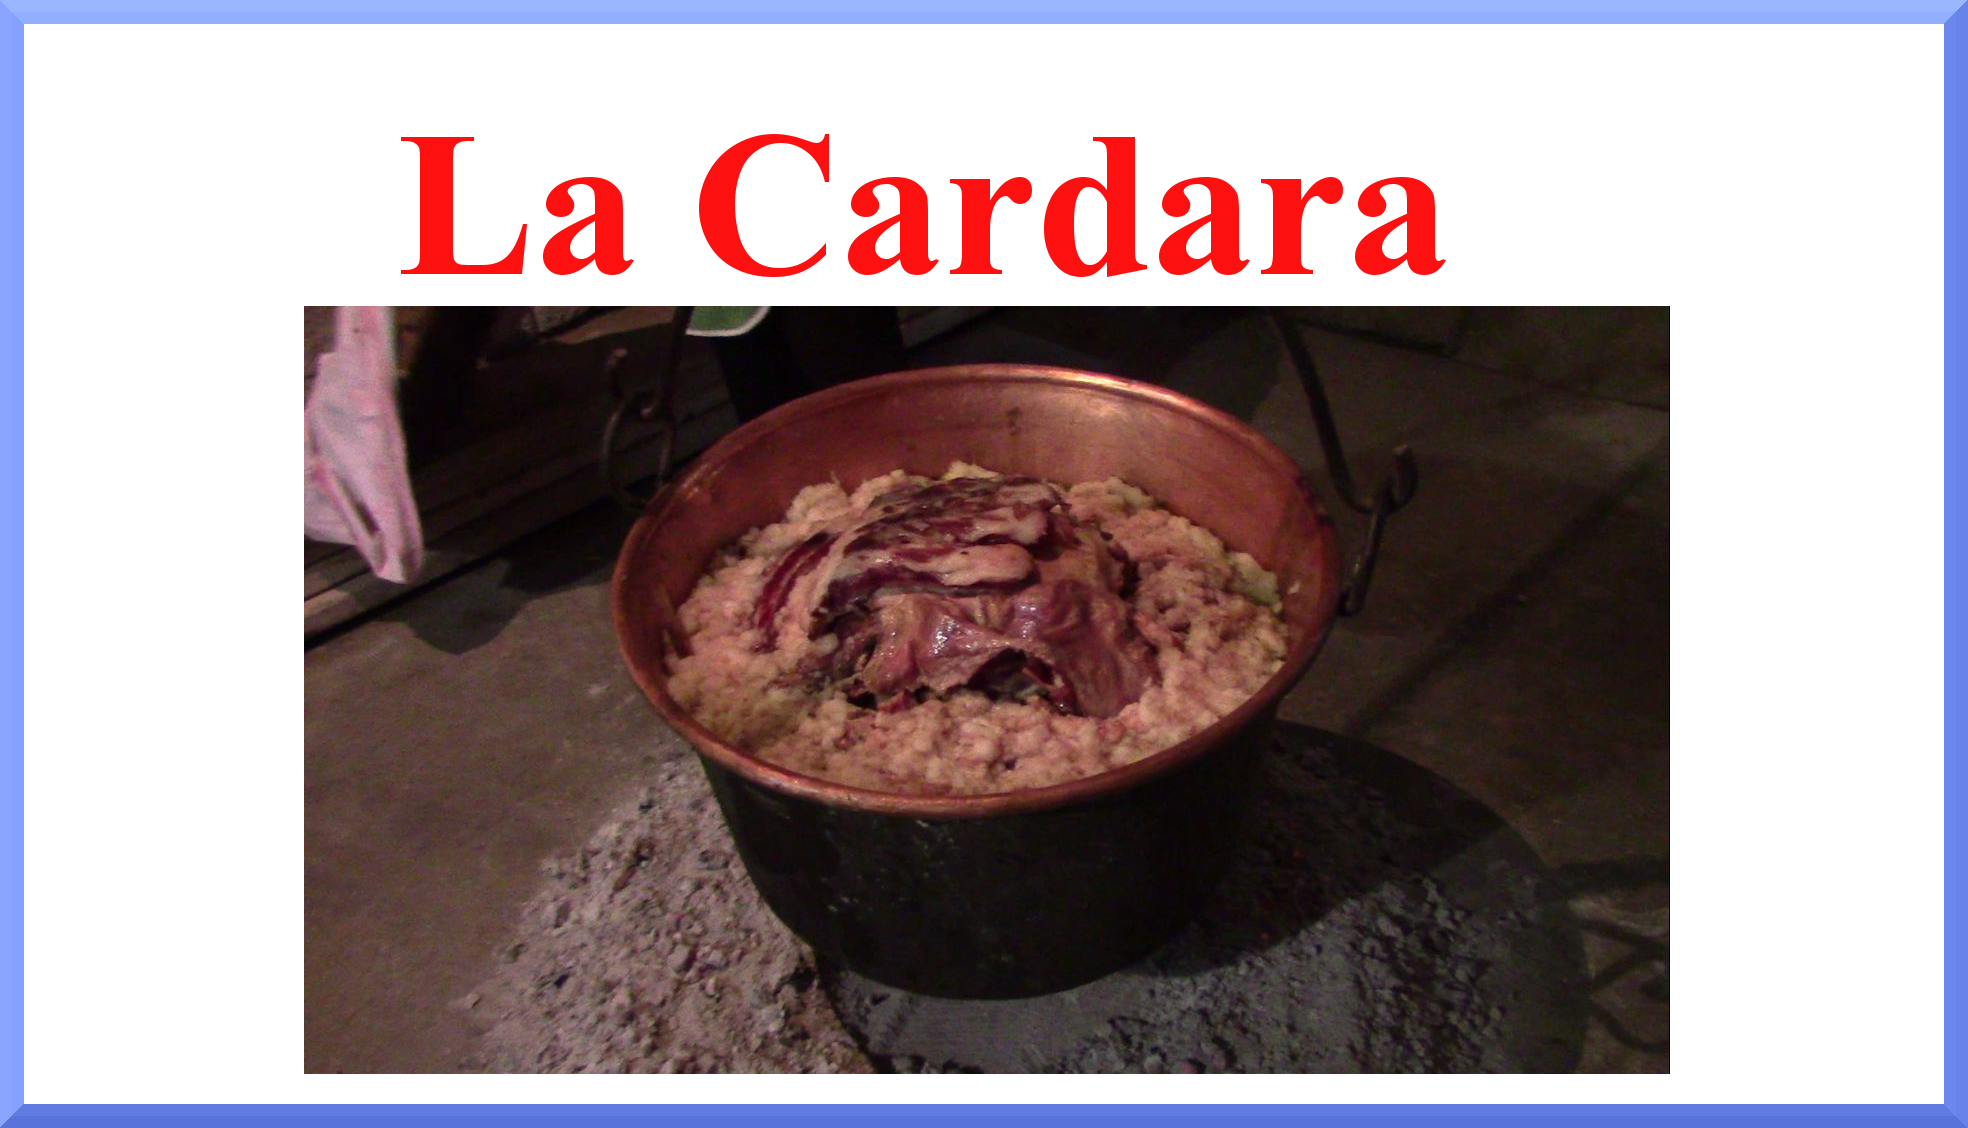 Il rito dell'uccisione del maiale in Calabria – parte 2